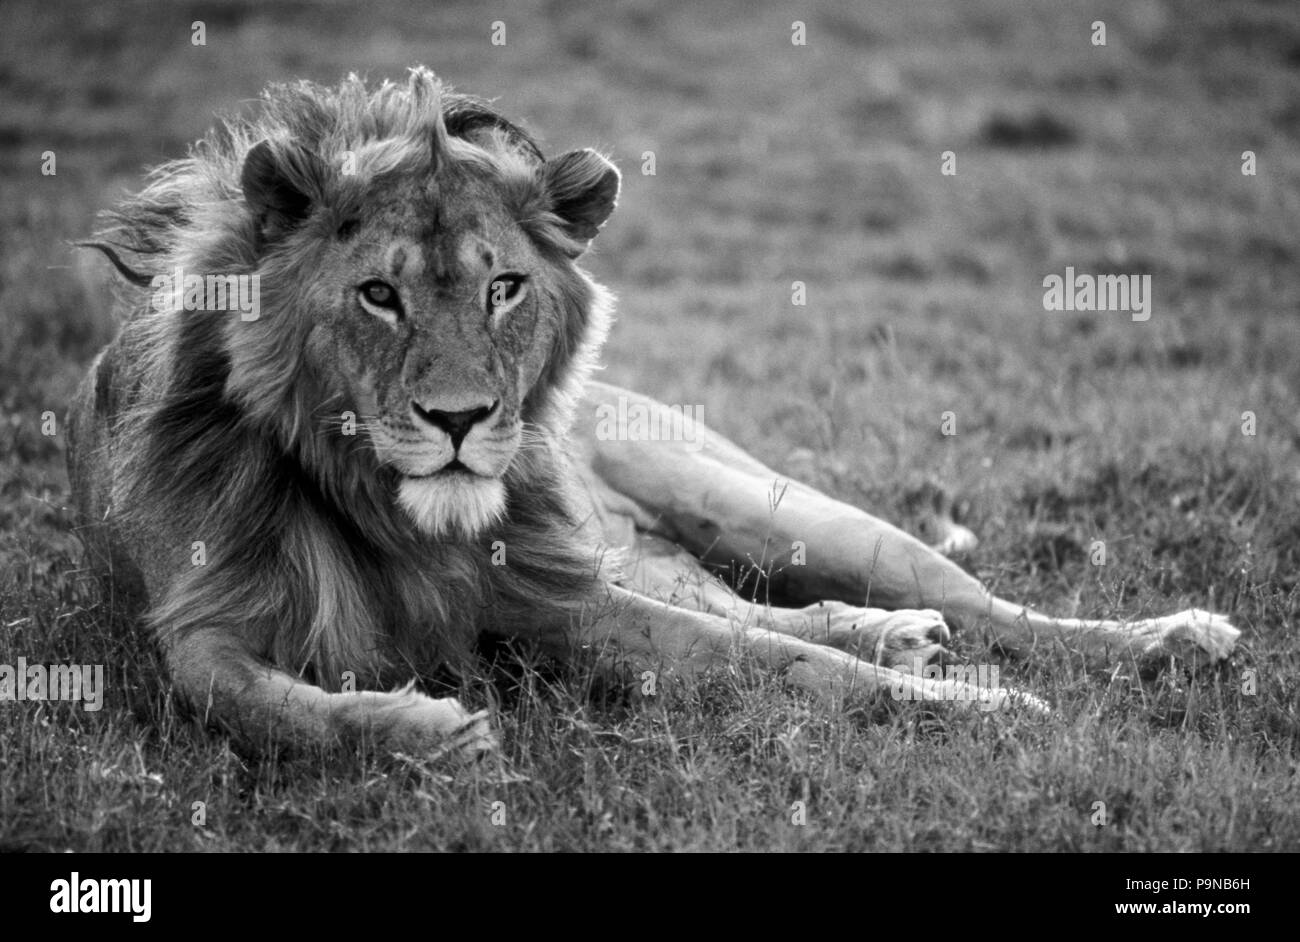 Ein männlicher Löwe (Panthera leo) können bis zu 500 Kilogramm wiegen und ist das dominierende Predator von Afrika - Serengeti National Park, Tansania Stockfoto